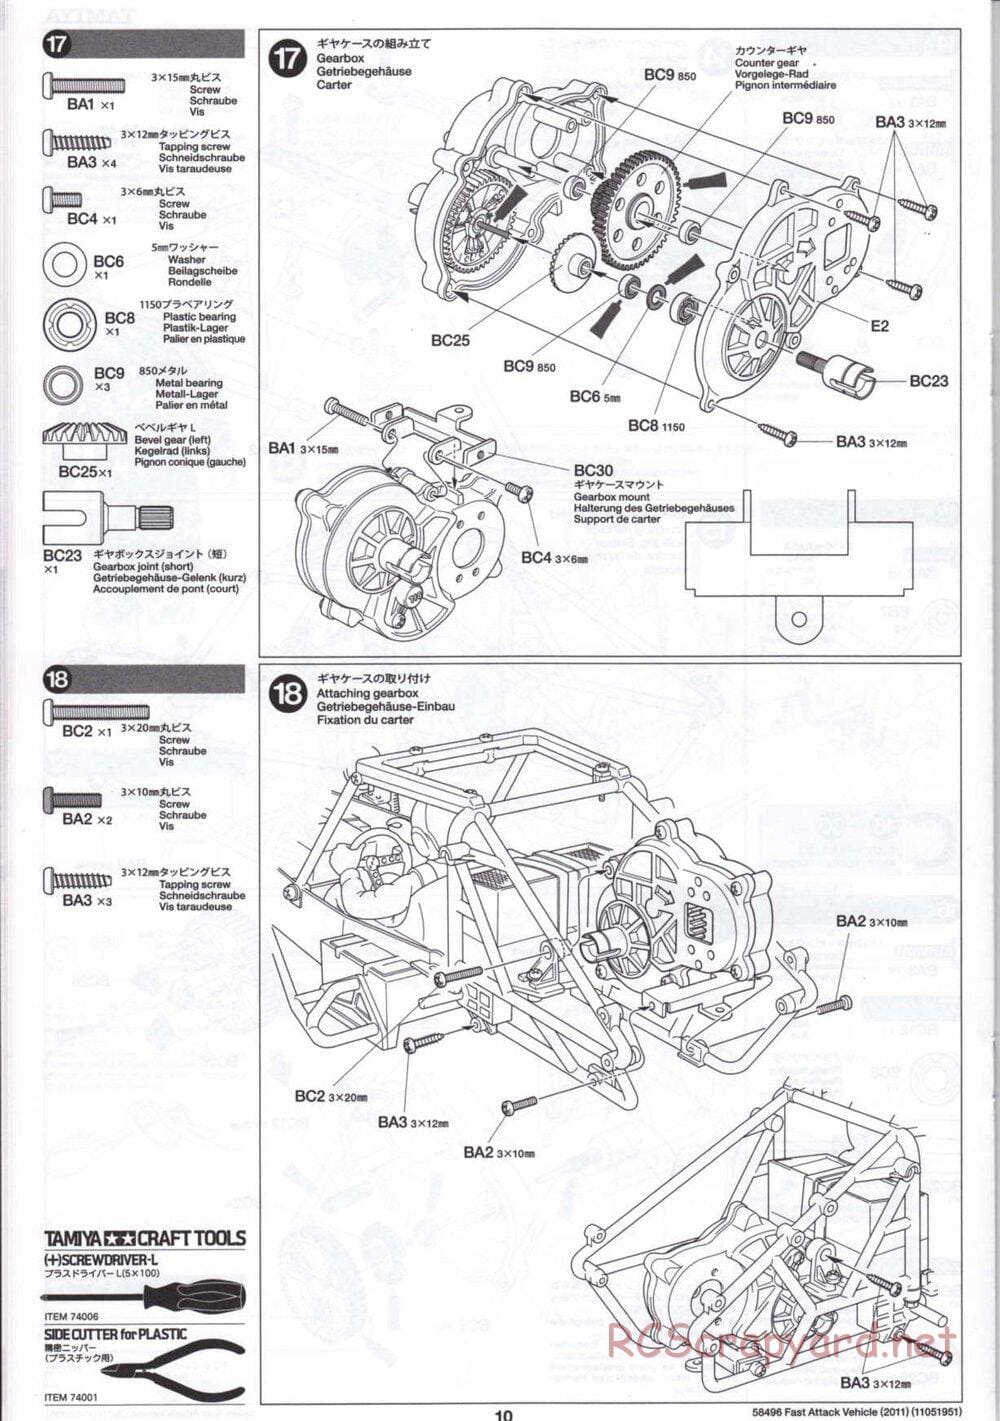 Tamiya - Fast Attack Vehicle 2011 - FAV Chassis - Manual - Page 10